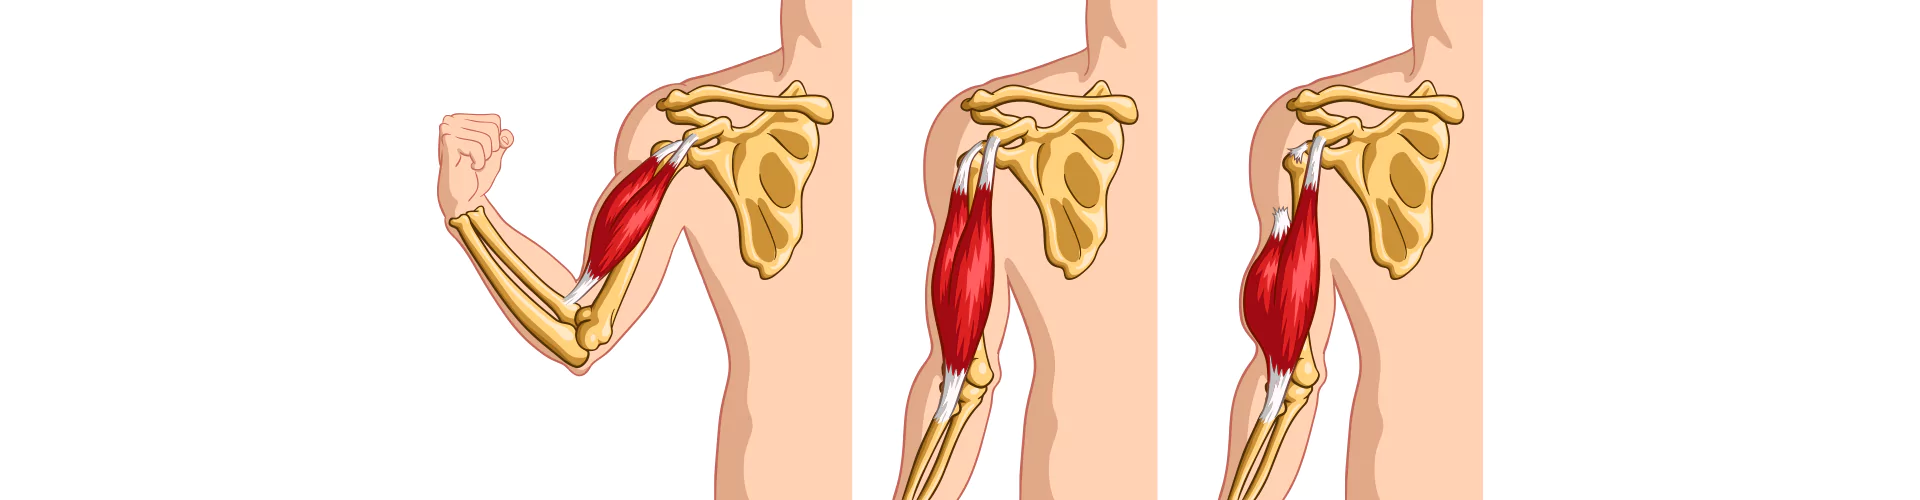 Strappi-muscolari-e-mal-di-schiena-come-evitarli-durante-lallenamento